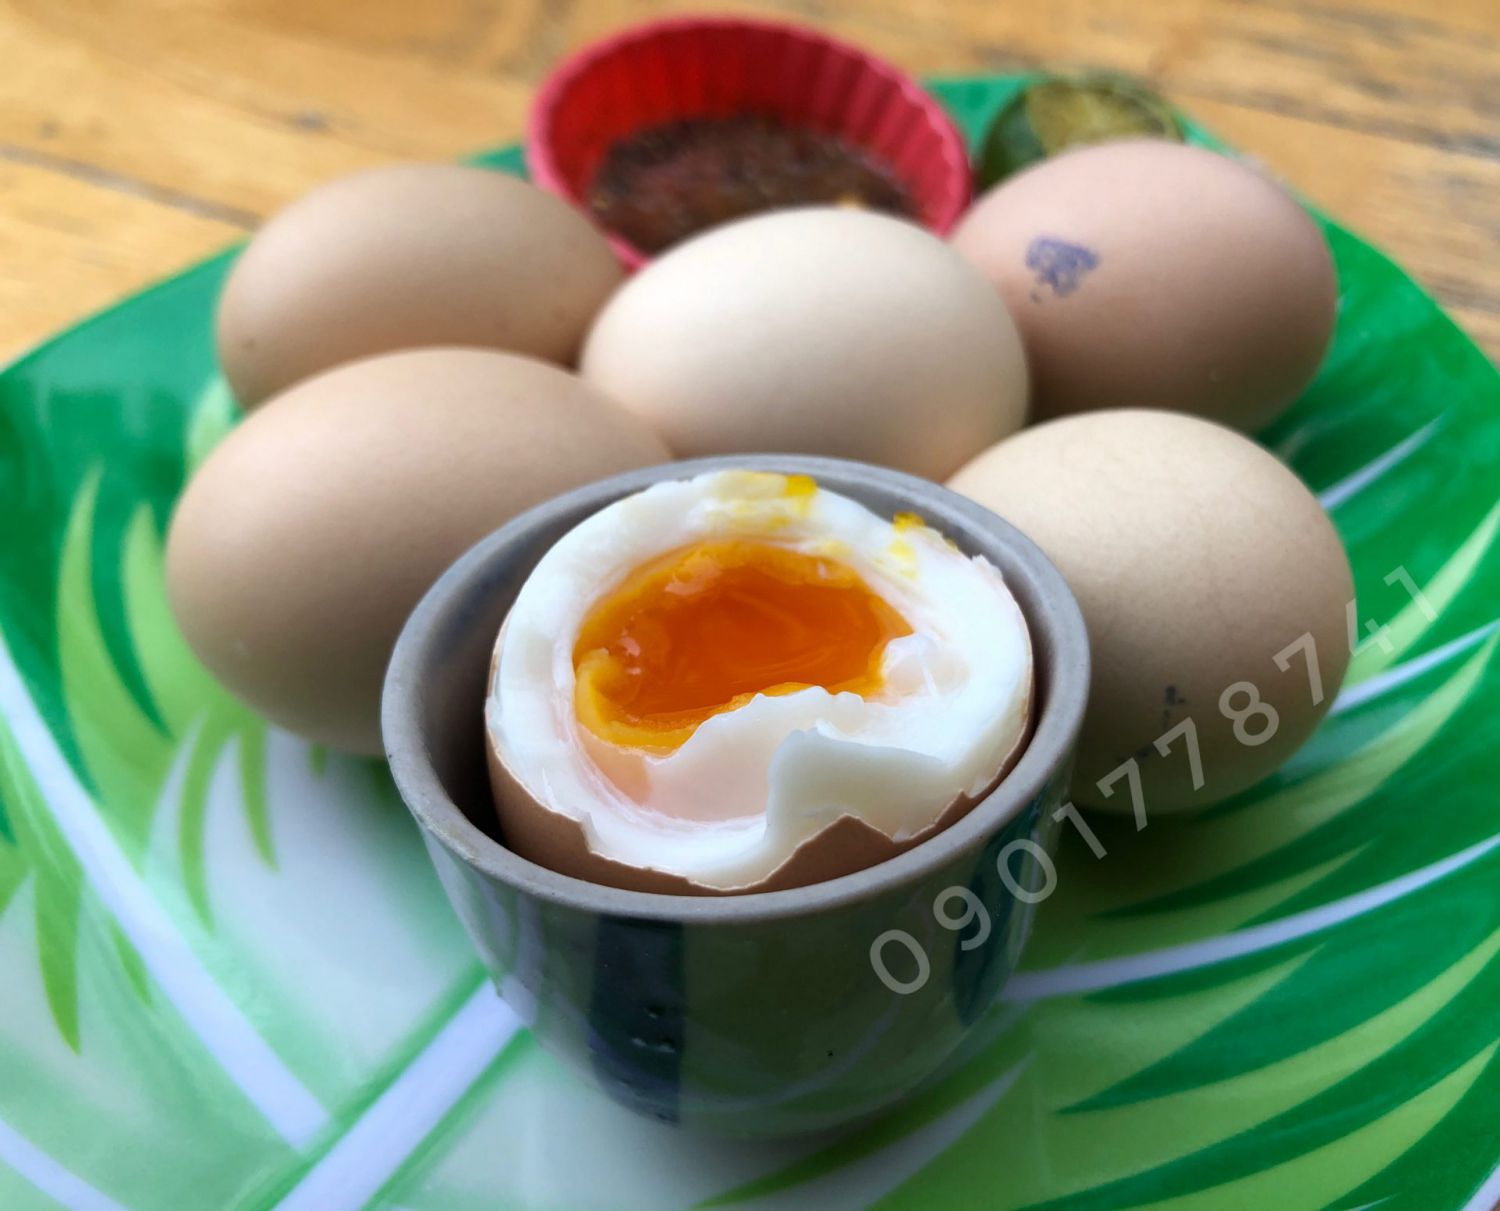 Tặng thêm trứng gà ác lòng đào cho cư dân A1 – Chung cư Sunview Town Hiệp Bình Phước (ngưng)